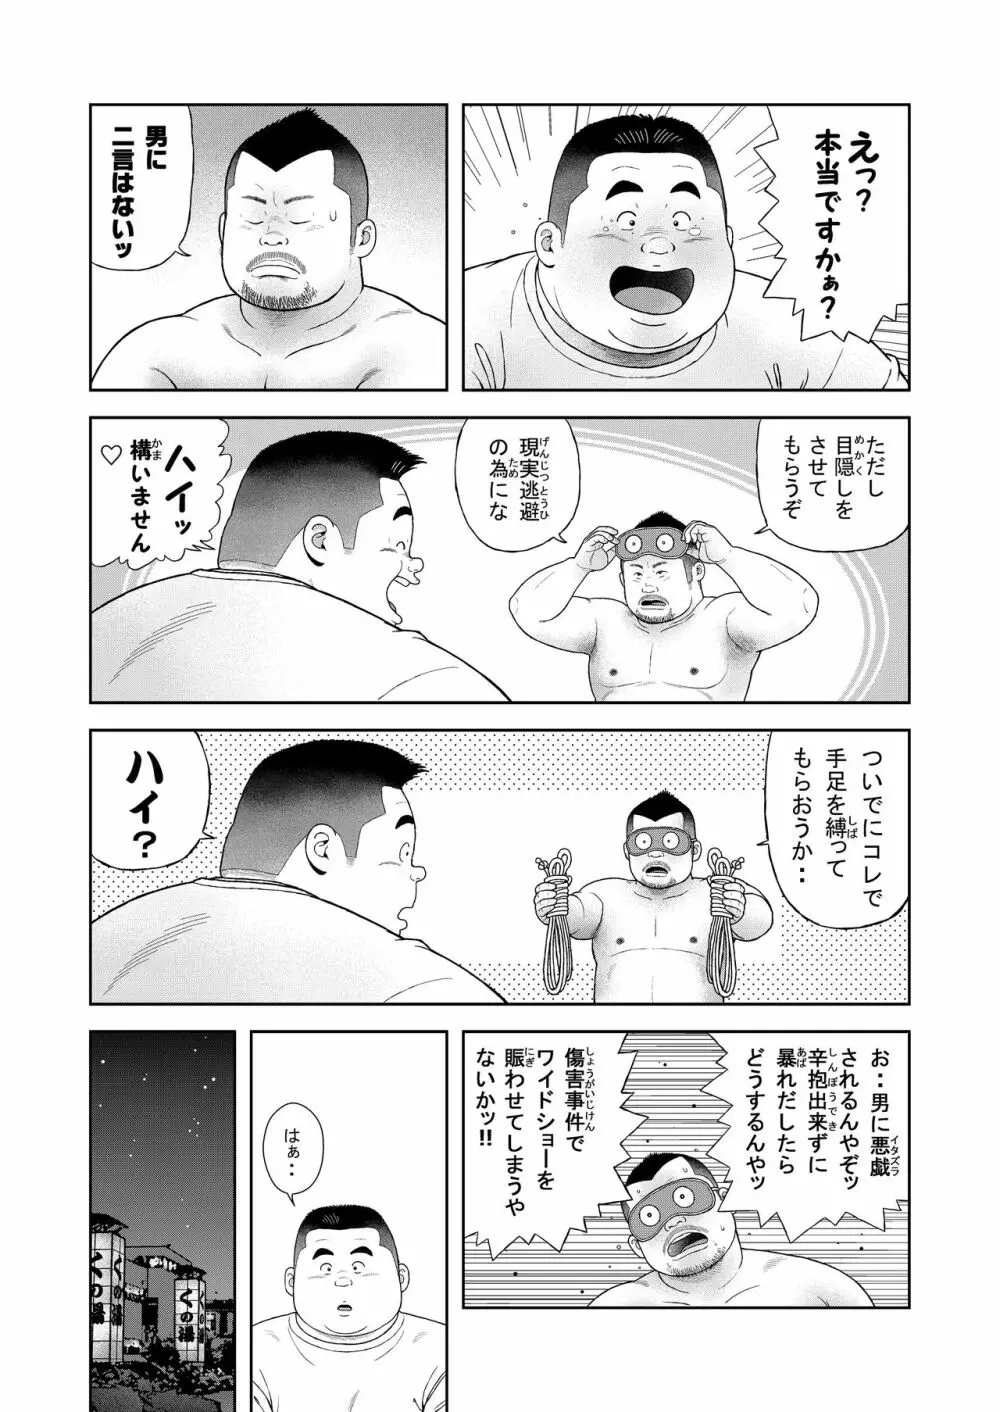 くの湯 四発め 芸人の性 - page12